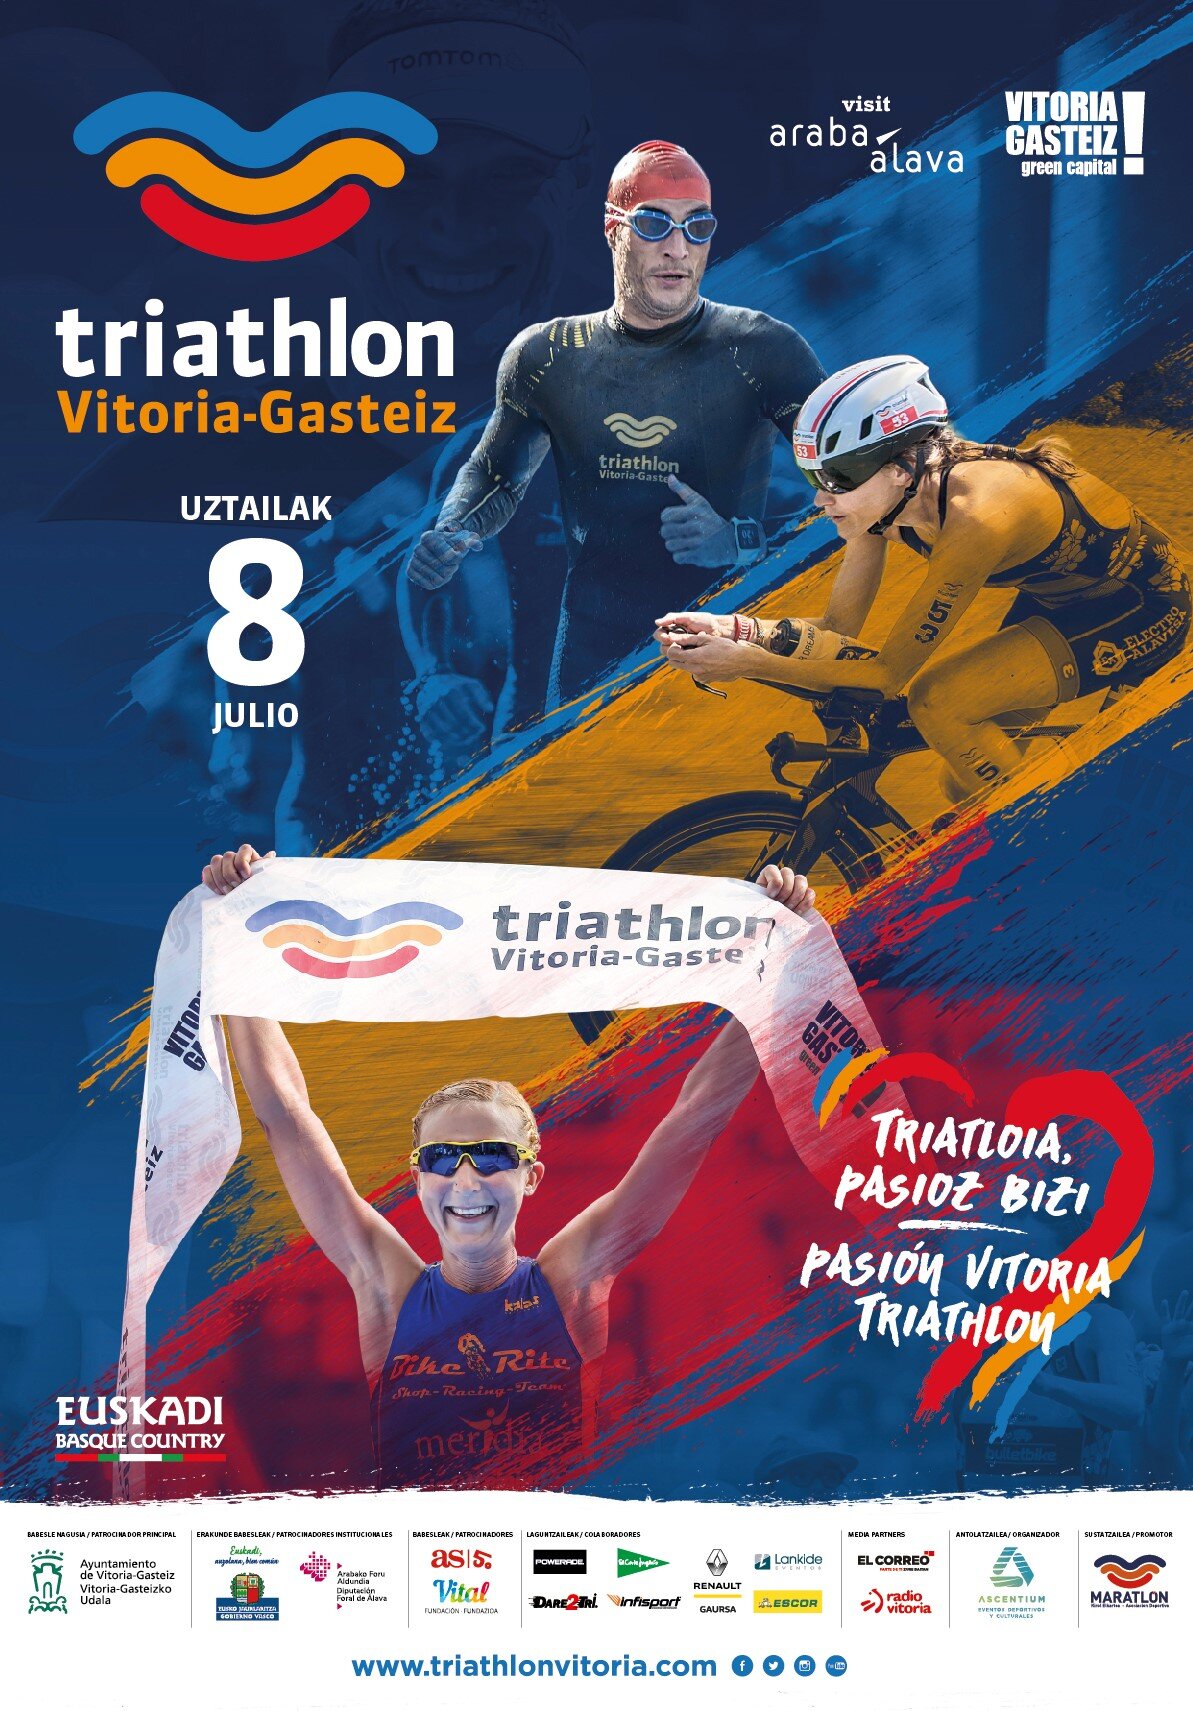 Empieza la cuenta atrás para el Triathlon Vitoria-Gasteiz, publicado el cartel para la edición de 2018 ,noticias_08_cartel-oficia-triathlon-vitoria-gasteiz